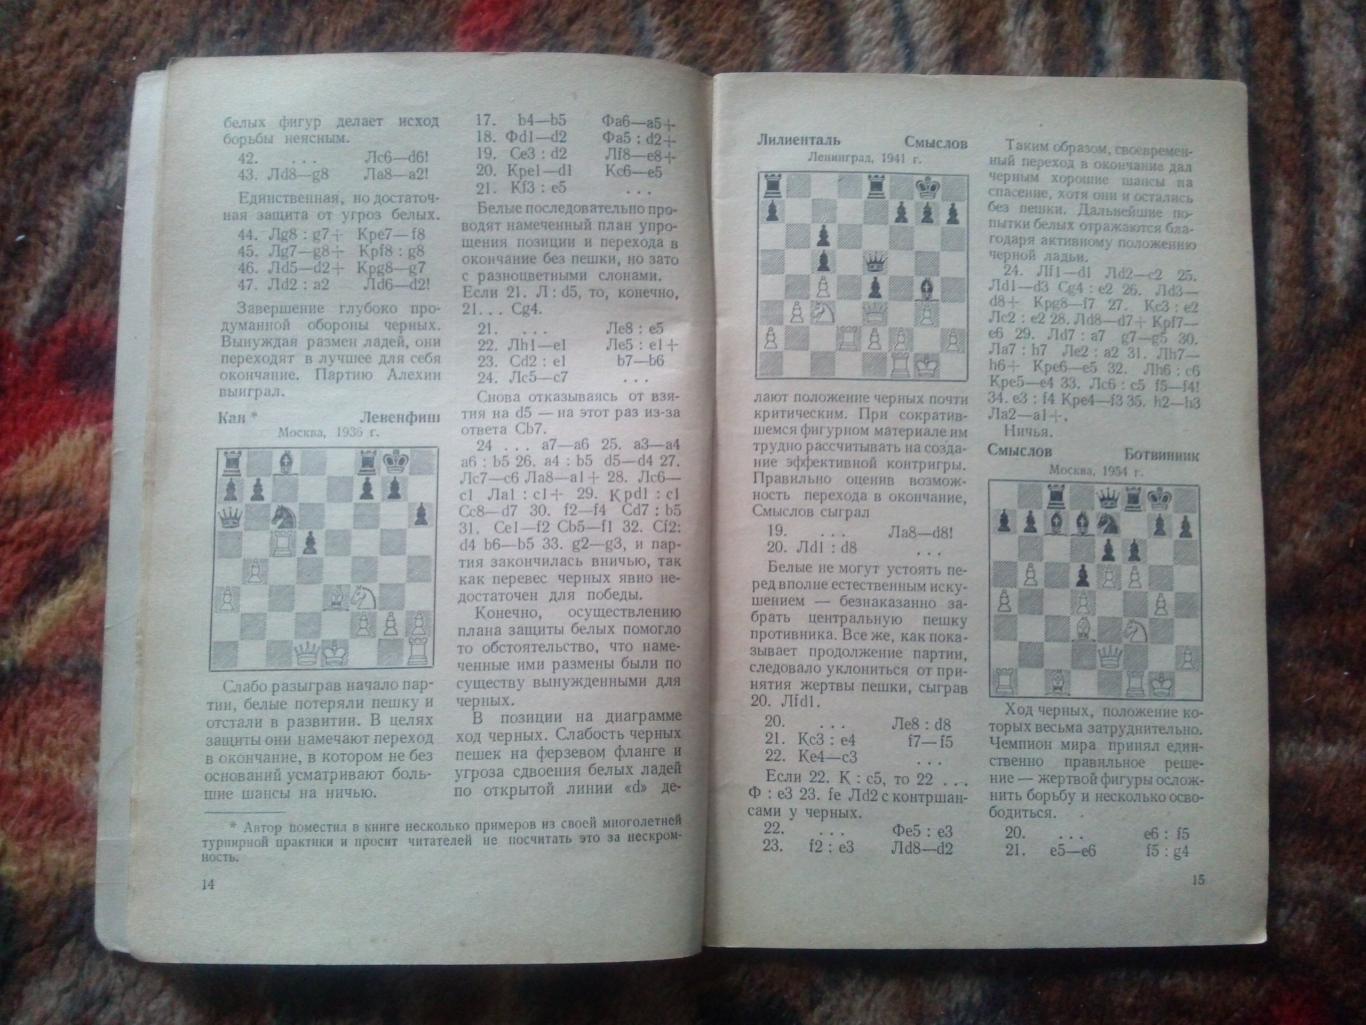 Шахматы : И.А. Кан -Защита в шахматной партии1957 г. ФИС Спорт 4